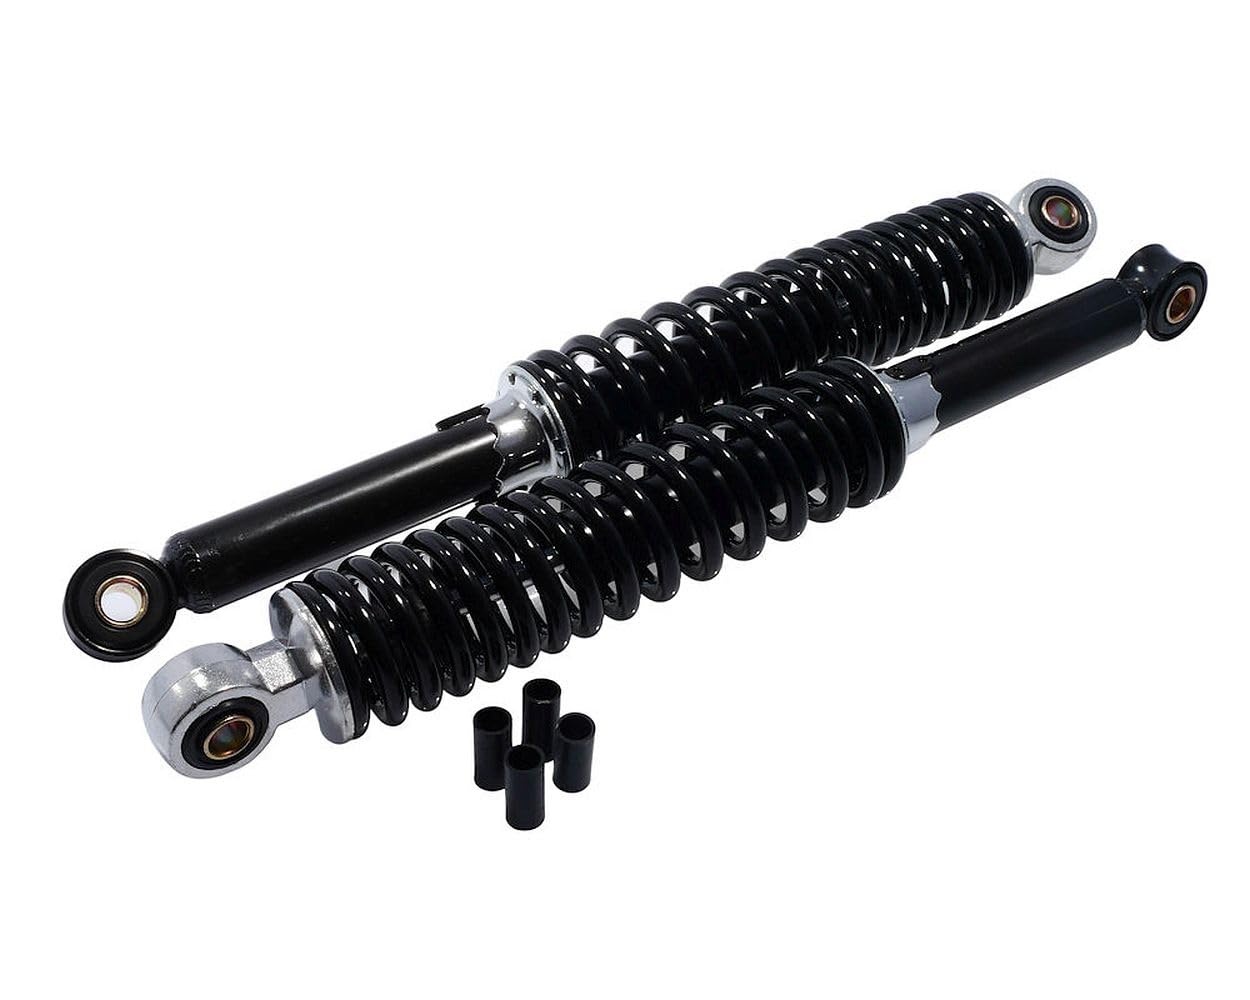 2EXTREME Stoßdämpfer Federbein Set 340mm M8 M10 schwarz universal kompatibel für Moped Schaltmoped Mofa von 2EXTREME